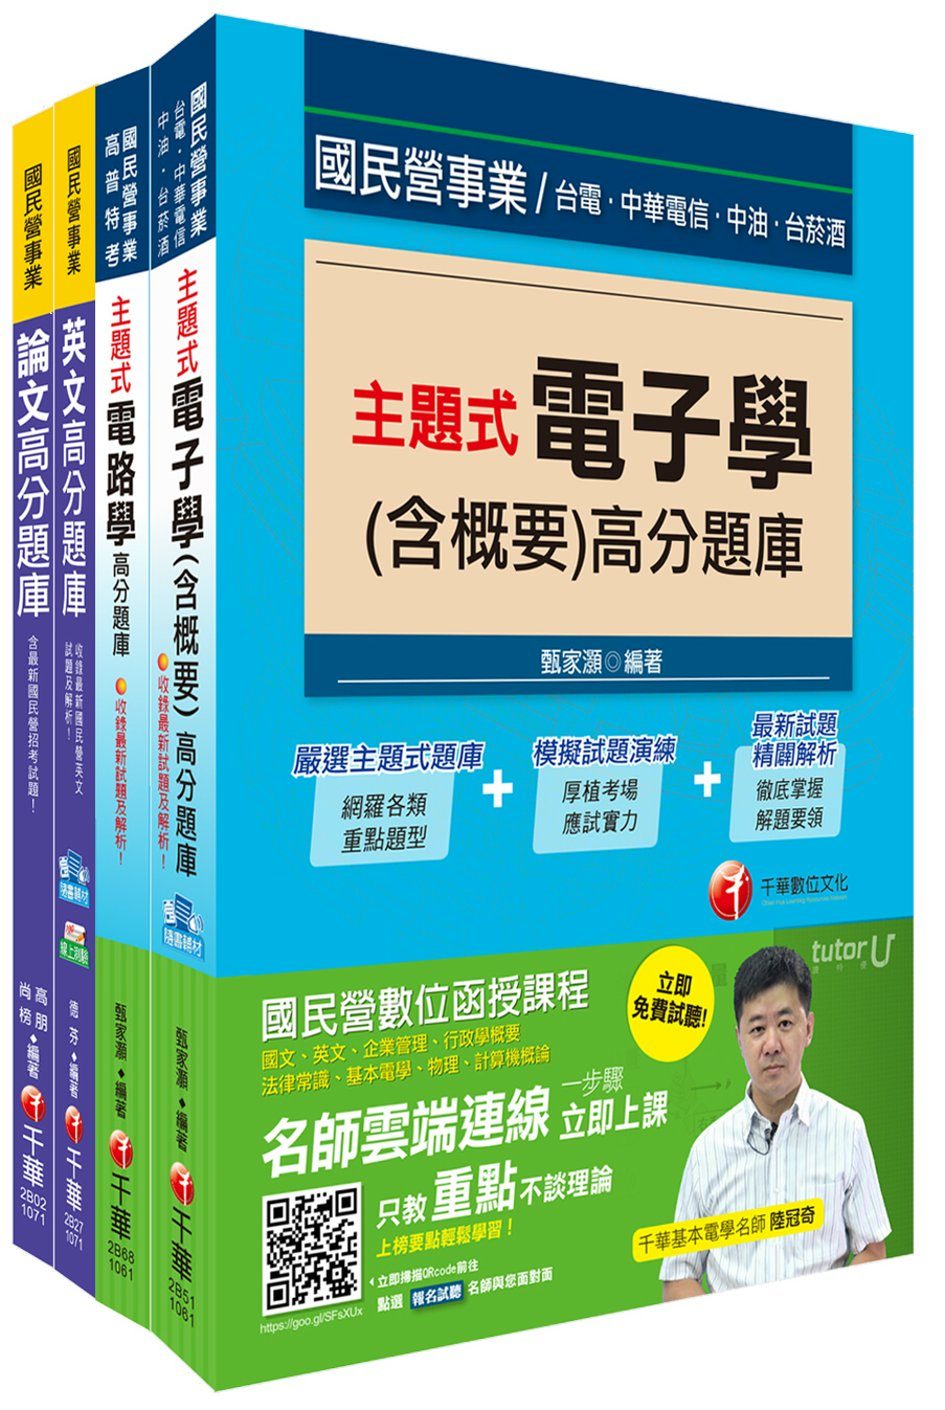 107年《電子維修類_助理工程員》臺中捷運公司題庫版套書